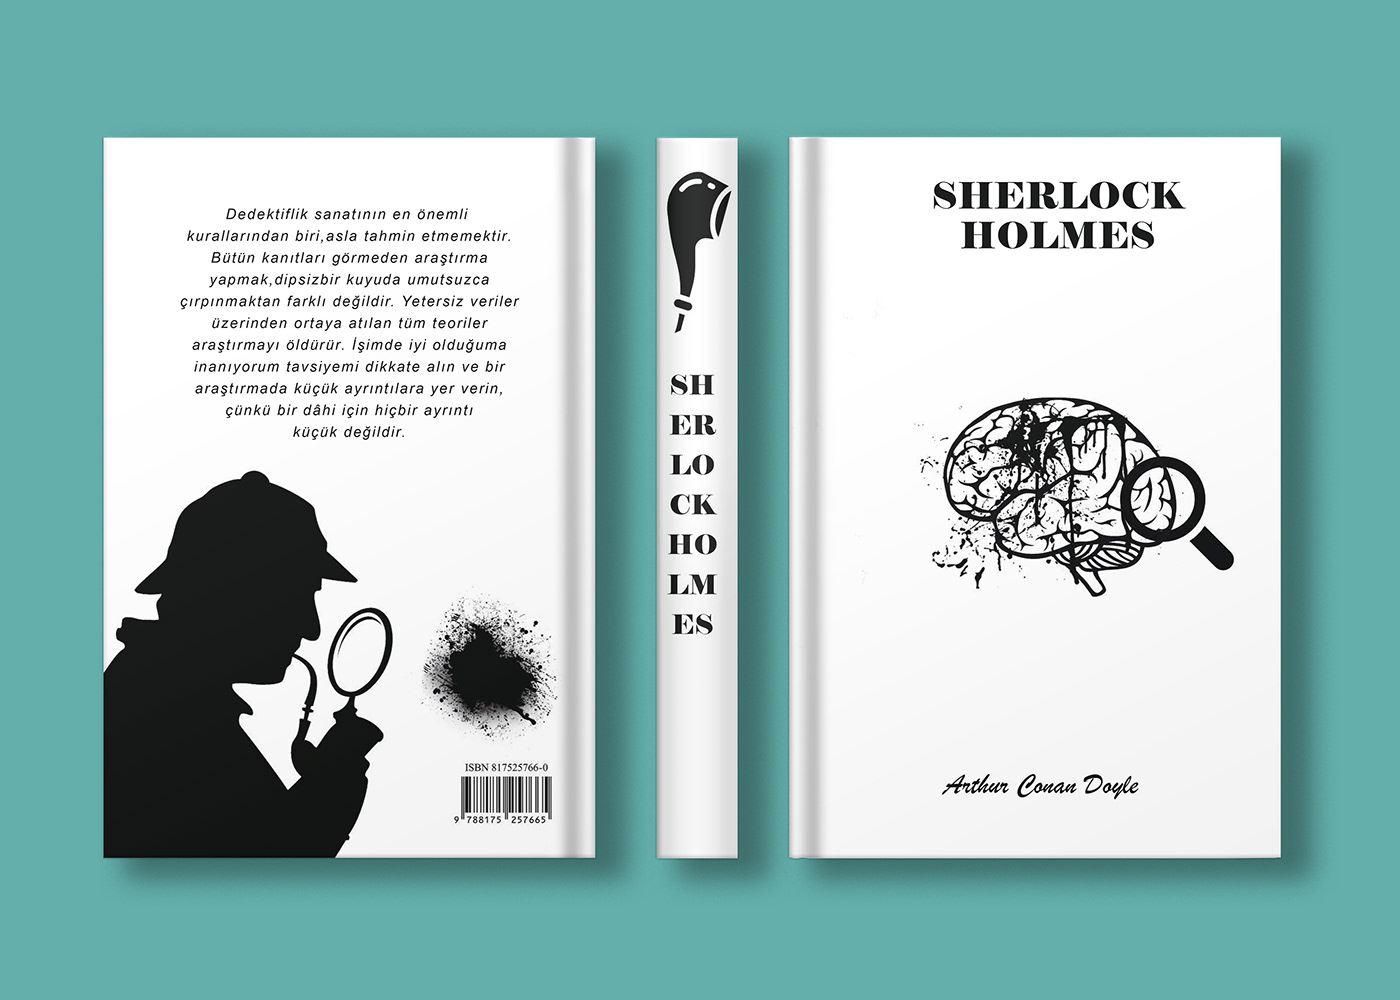 Book Cover Design book design books cover design design kapak tasarımı Kitap Kapağı Sherlock Holmes sherlock holmes book Sherlock Holmes Detective